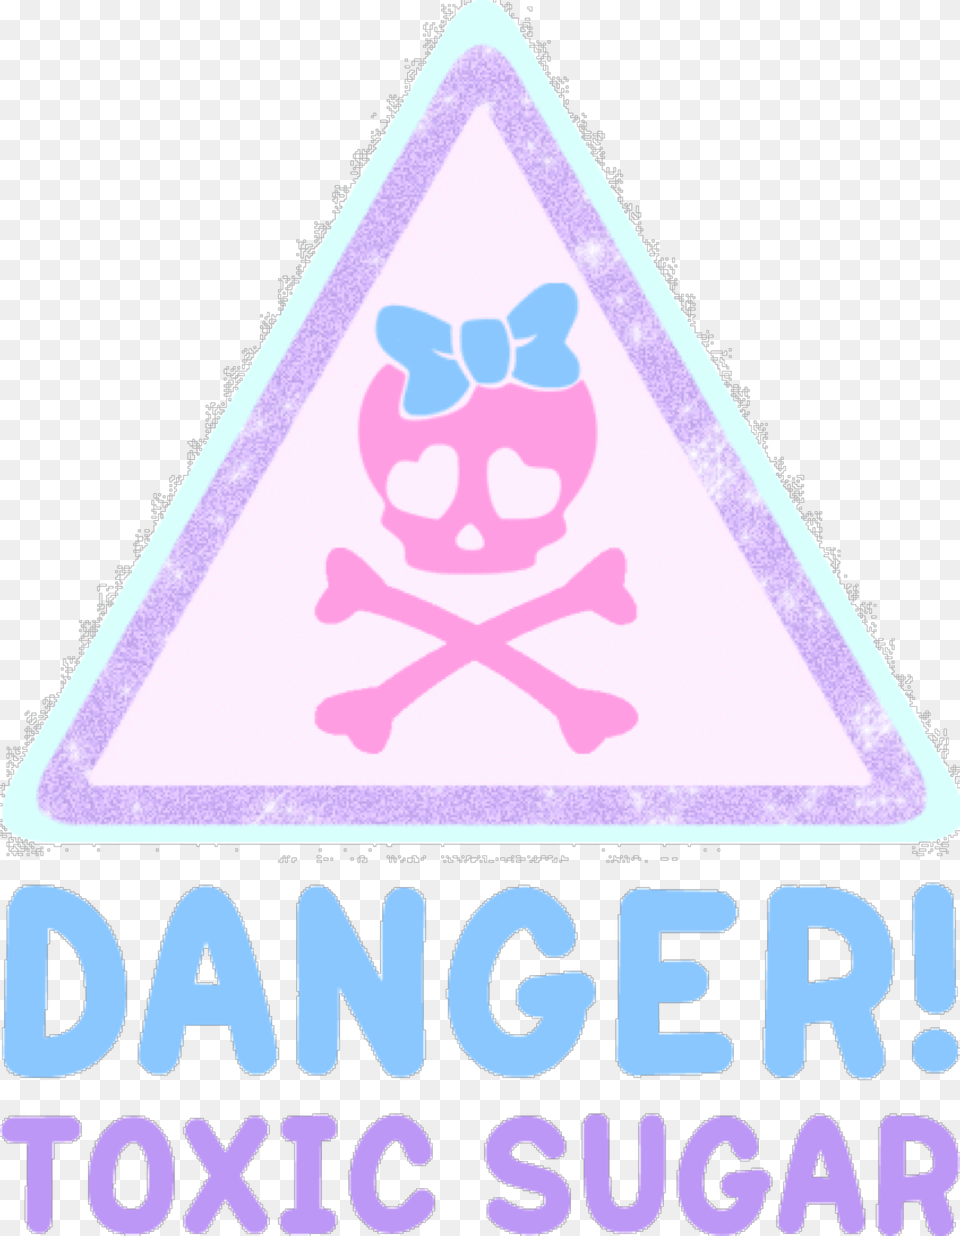 Pastel Pastelgoth Pastelgrunge Danger Toxic Sugar Kawaii Pastel Goth Transparent, Triangle, Baby, Person, Blackboard Free Png Download